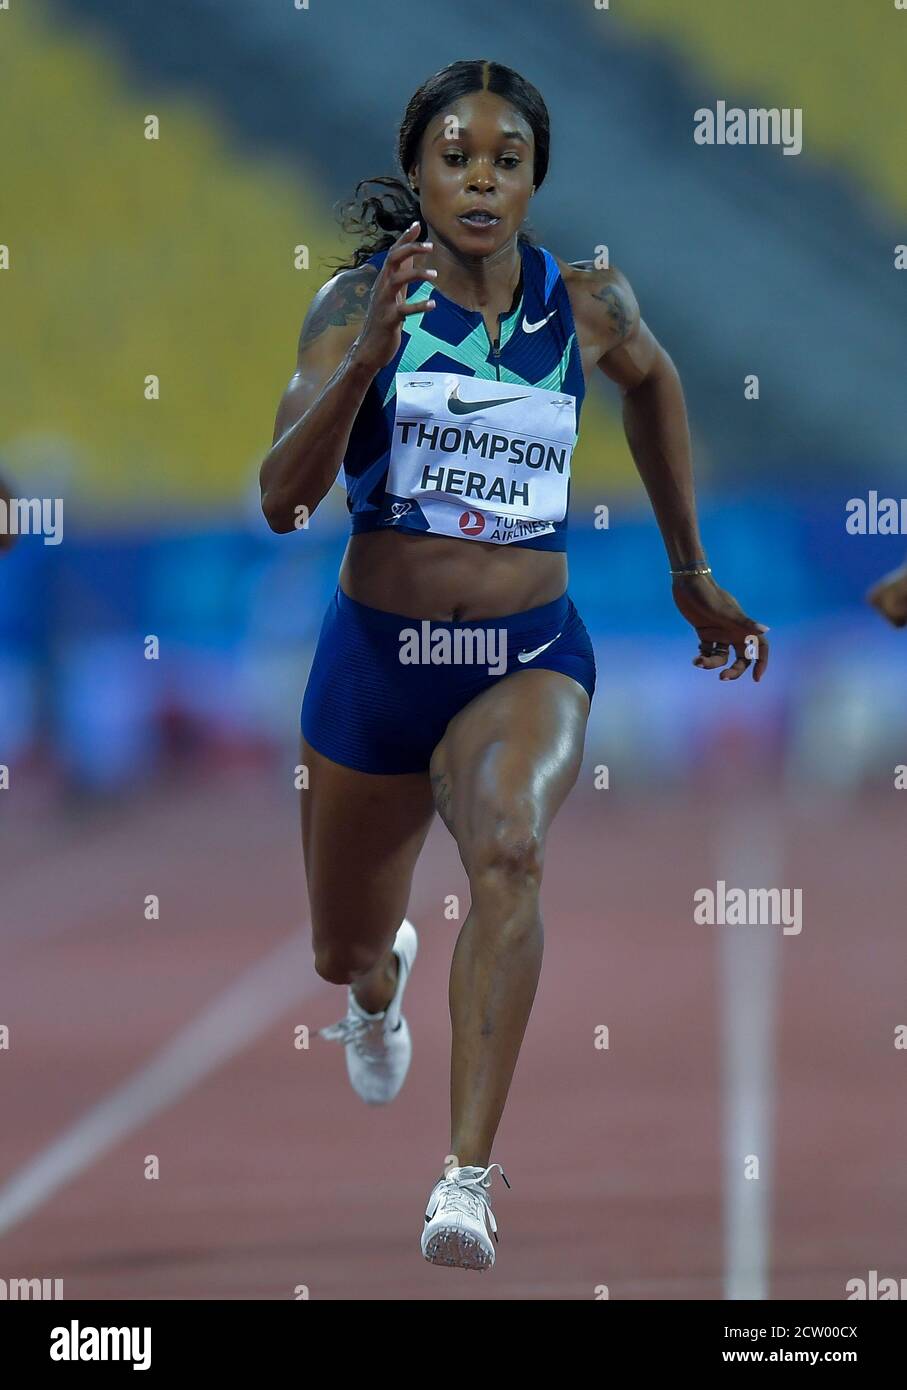 Doha, Qatar. 25 septembre 2020. Elaine Thompson-Herah, de la Jamaïque, participe à la finale du 100m féminin à la réunion d'athlétisme de la Diamond League 2020 à Doha, au Qatar, le 25 septembre 2020. Credit: Nikku/Xinhua/Alay Live News Banque D'Images